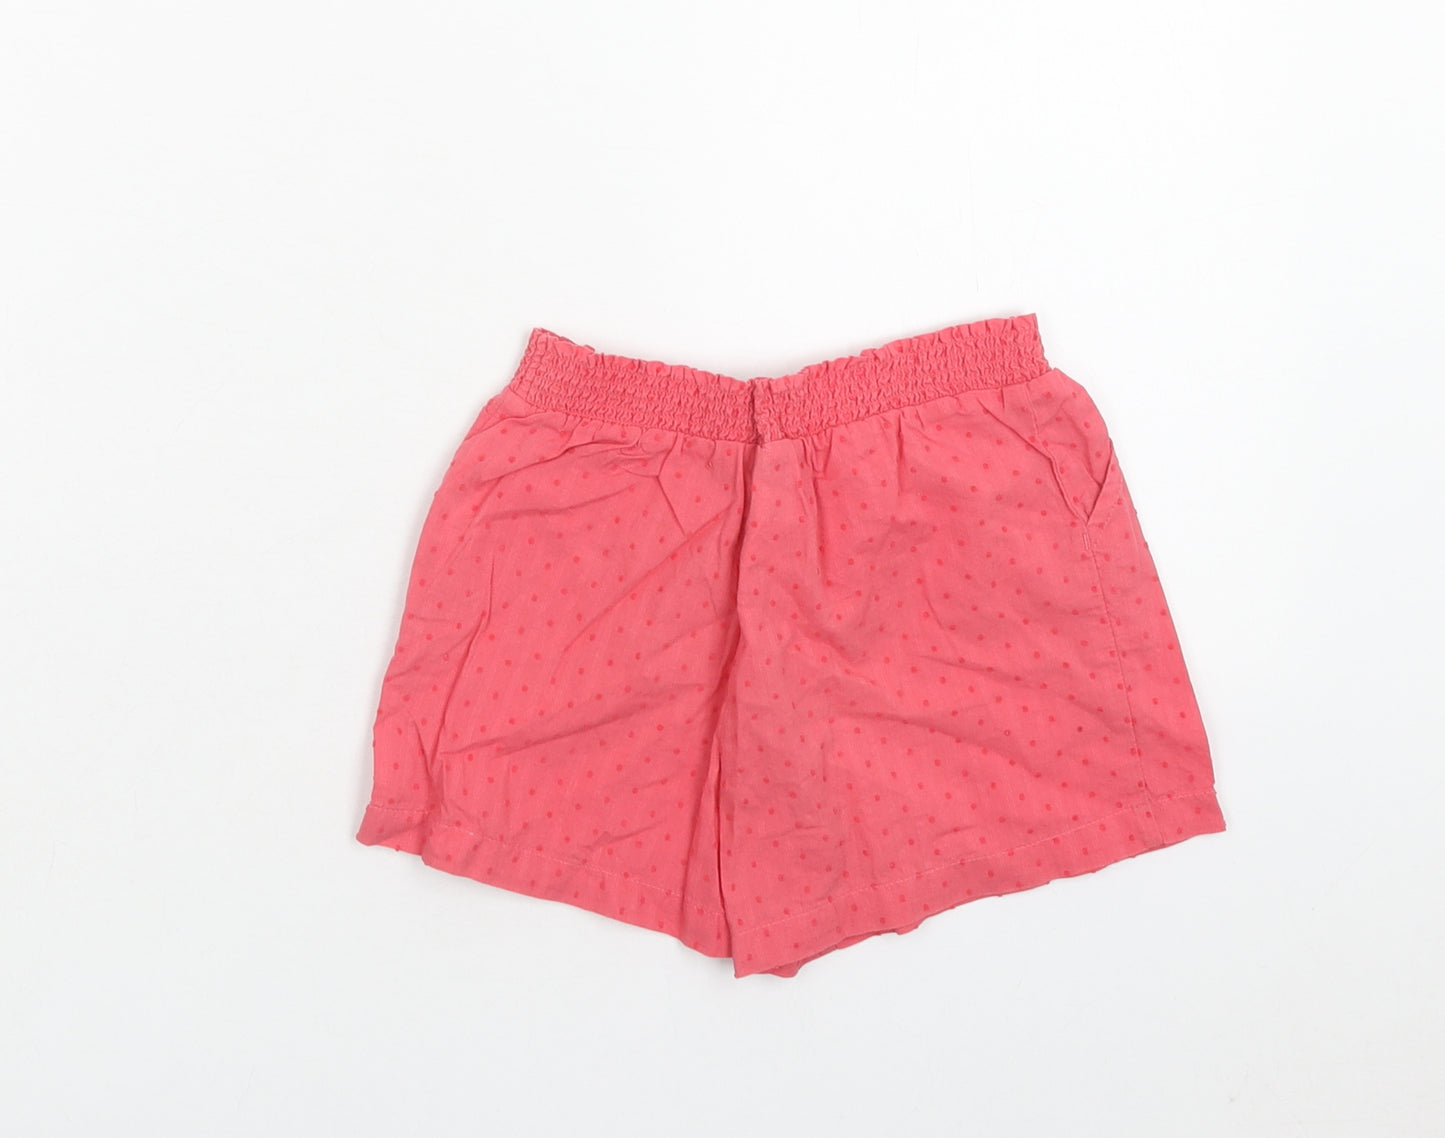 TU Girls Pink Geometric Cotton Culotte Shorts Size 4 Years Regular Drawstring